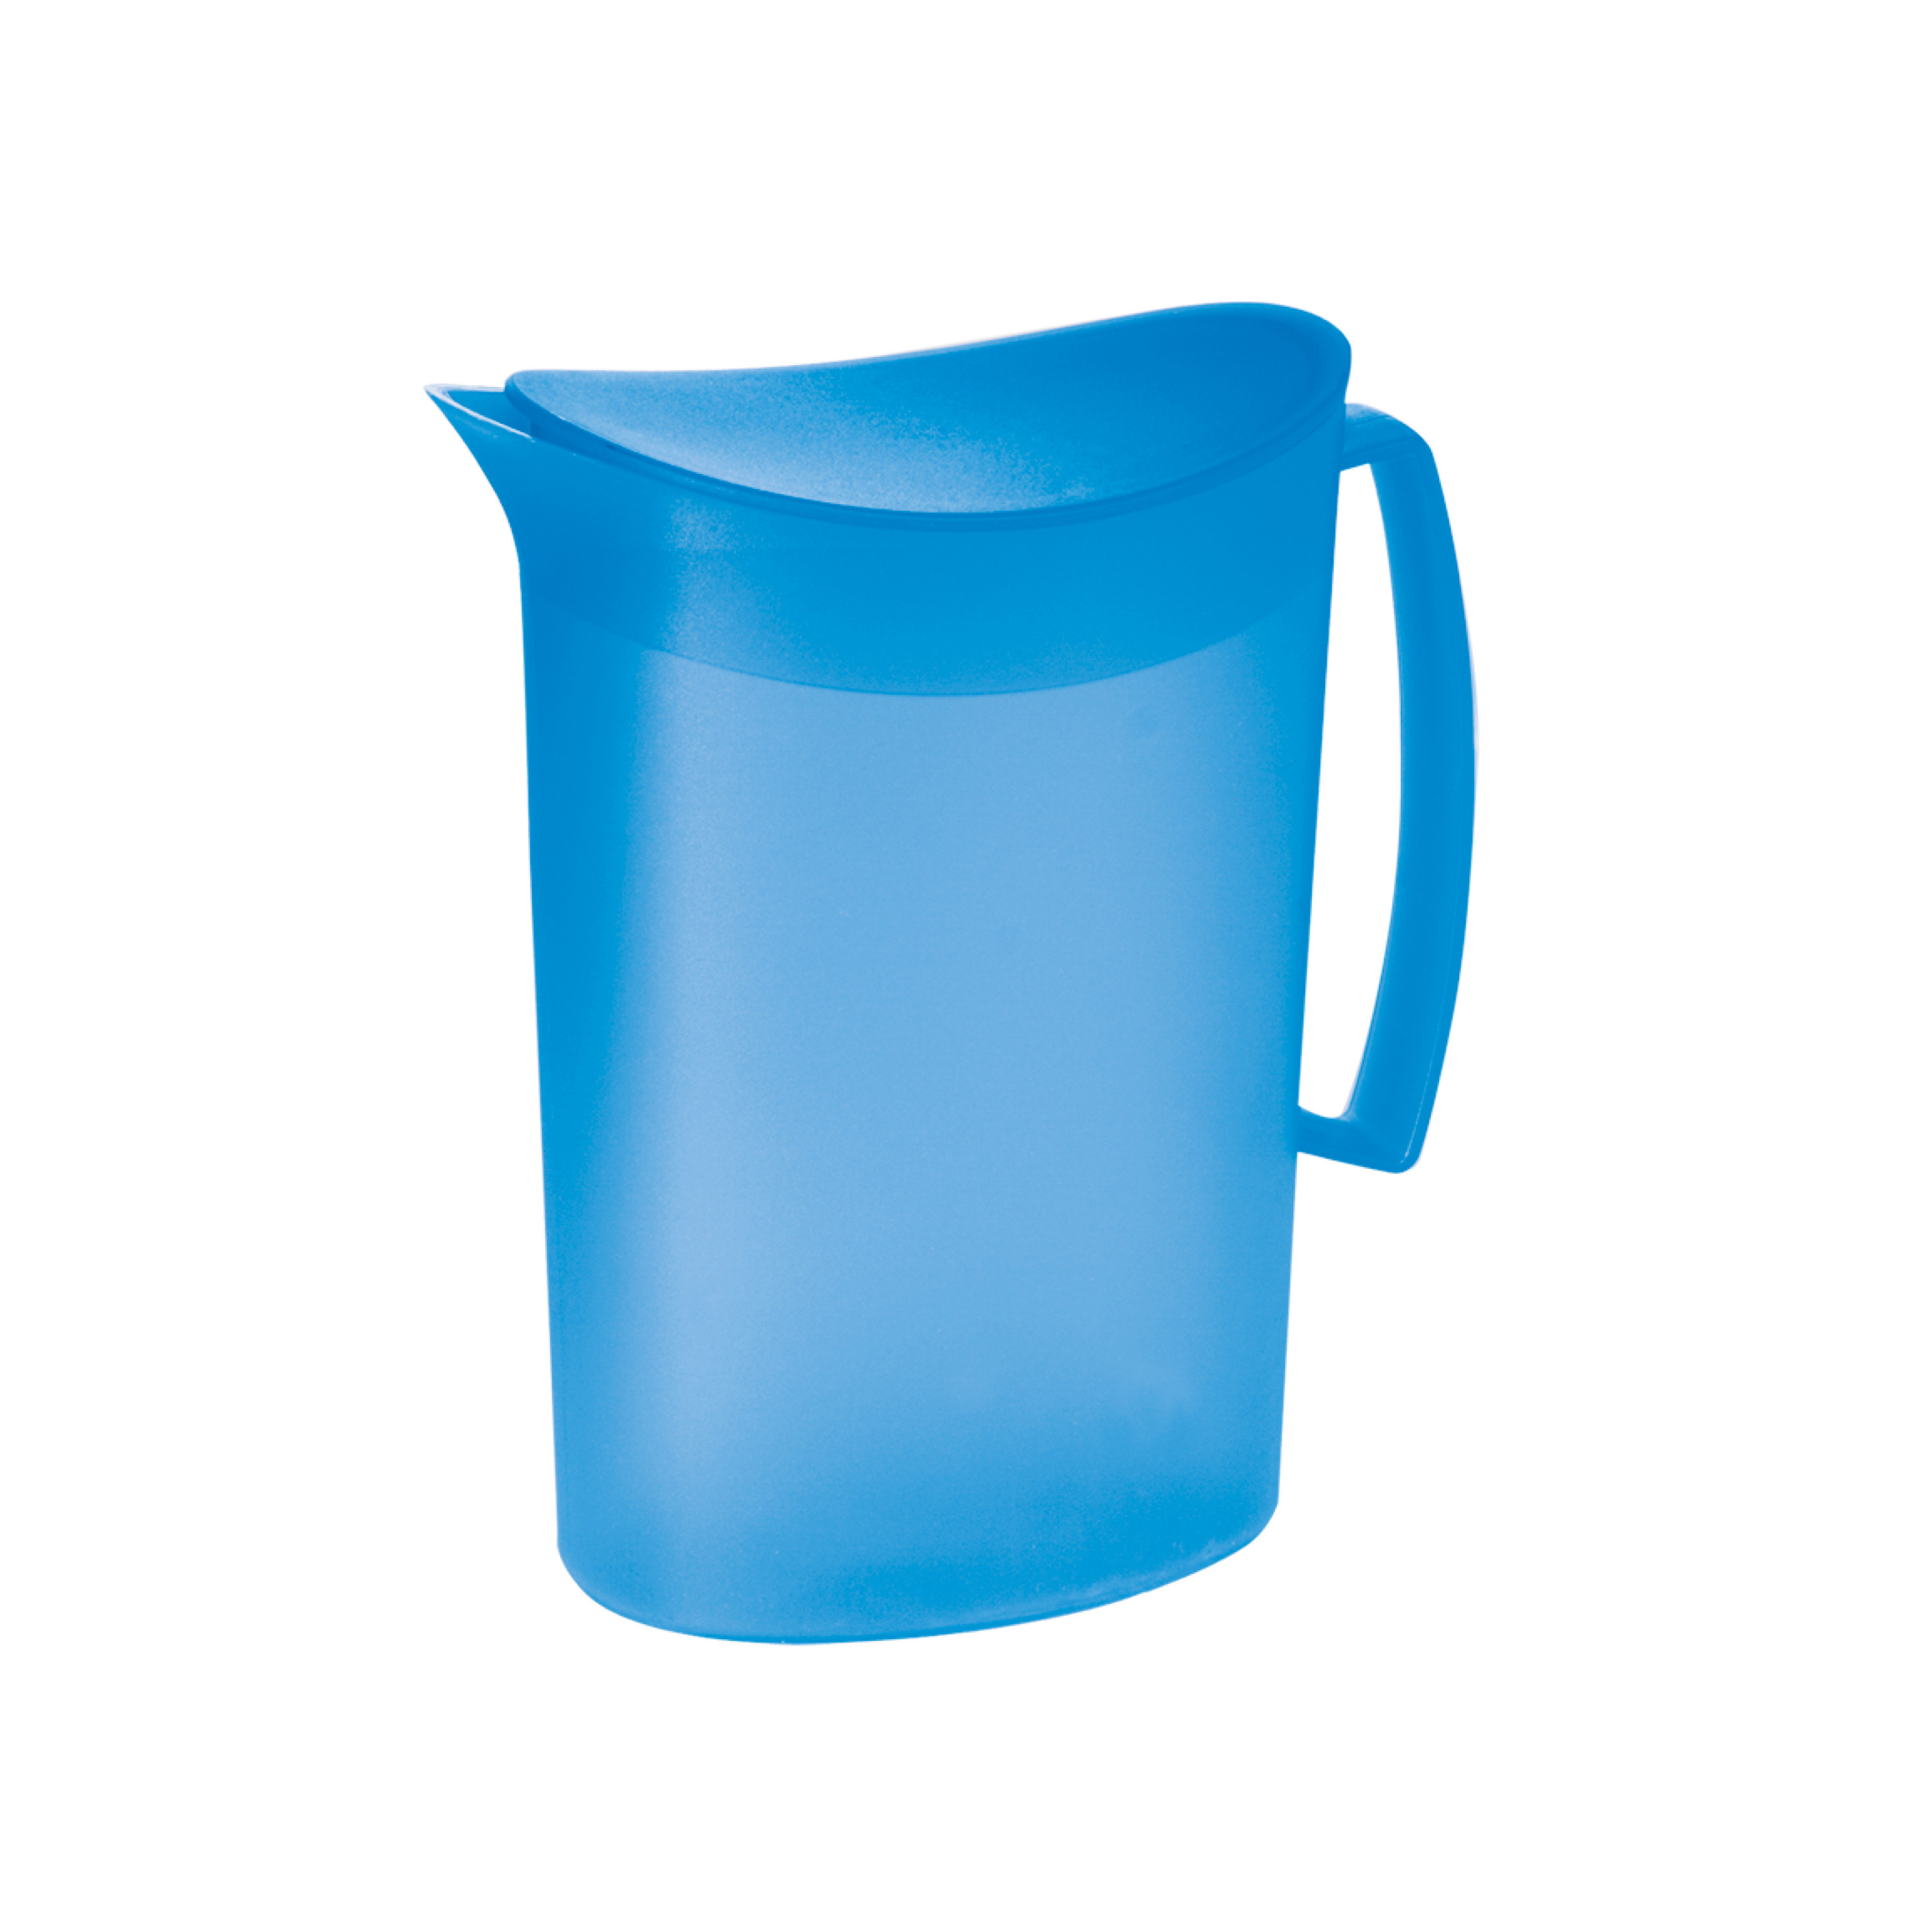 Juypal Hogar Schenkkan/waterkan met deksel - blauw - 2 liter - kunststof - L20 x H23 cm -